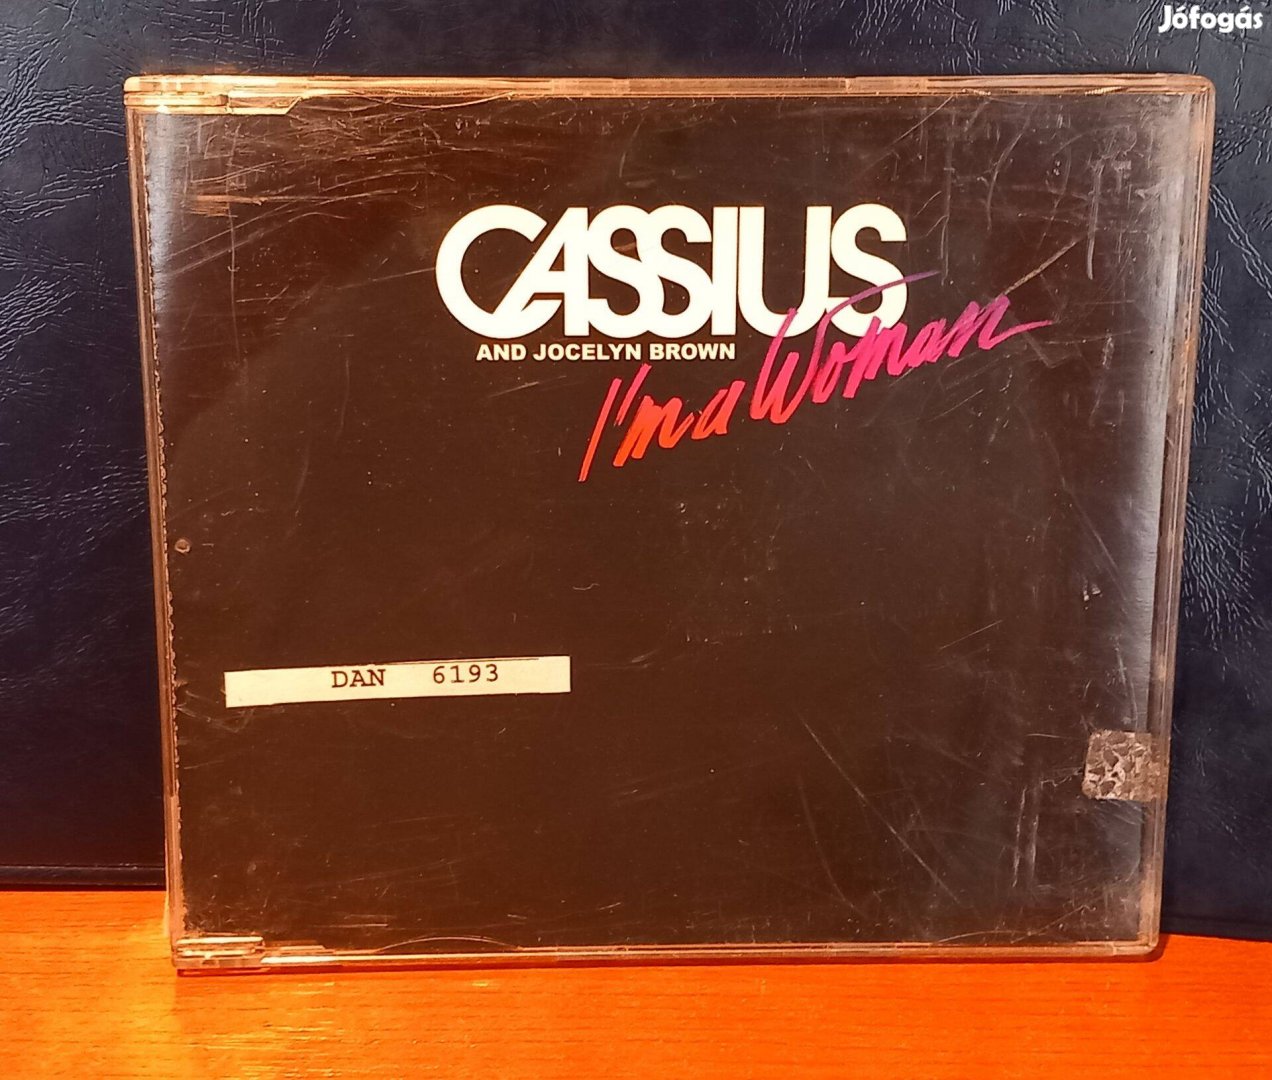 Cassius - I'm a Woman [ Maxi CD ]